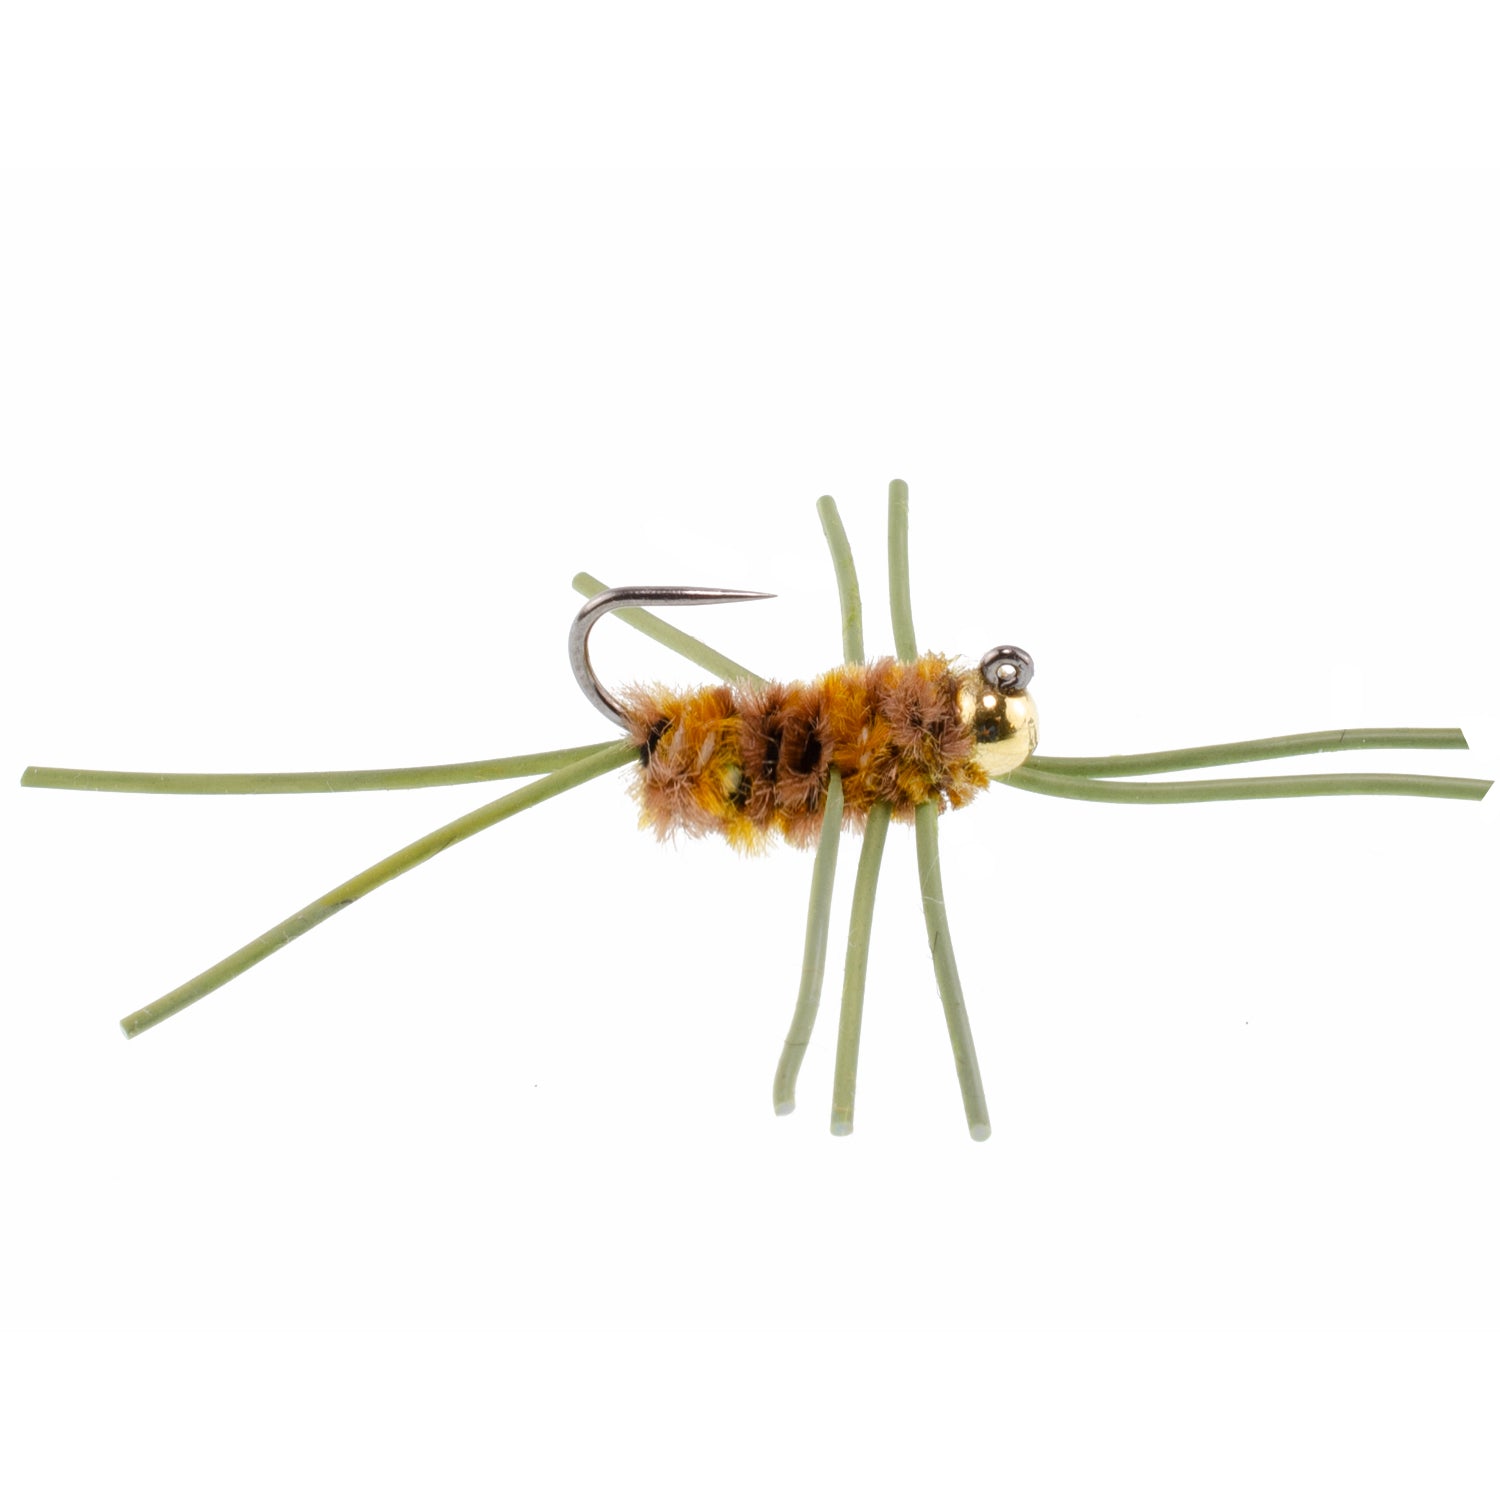 Cuentas de tungsteno Jigged Pat's Rubber Legs Surtido de moscas para pesca con mosca, patrón de mosca húmeda para trucha y lubina, 21 moscas, 7 colores, tamaño de anzuelo 10 